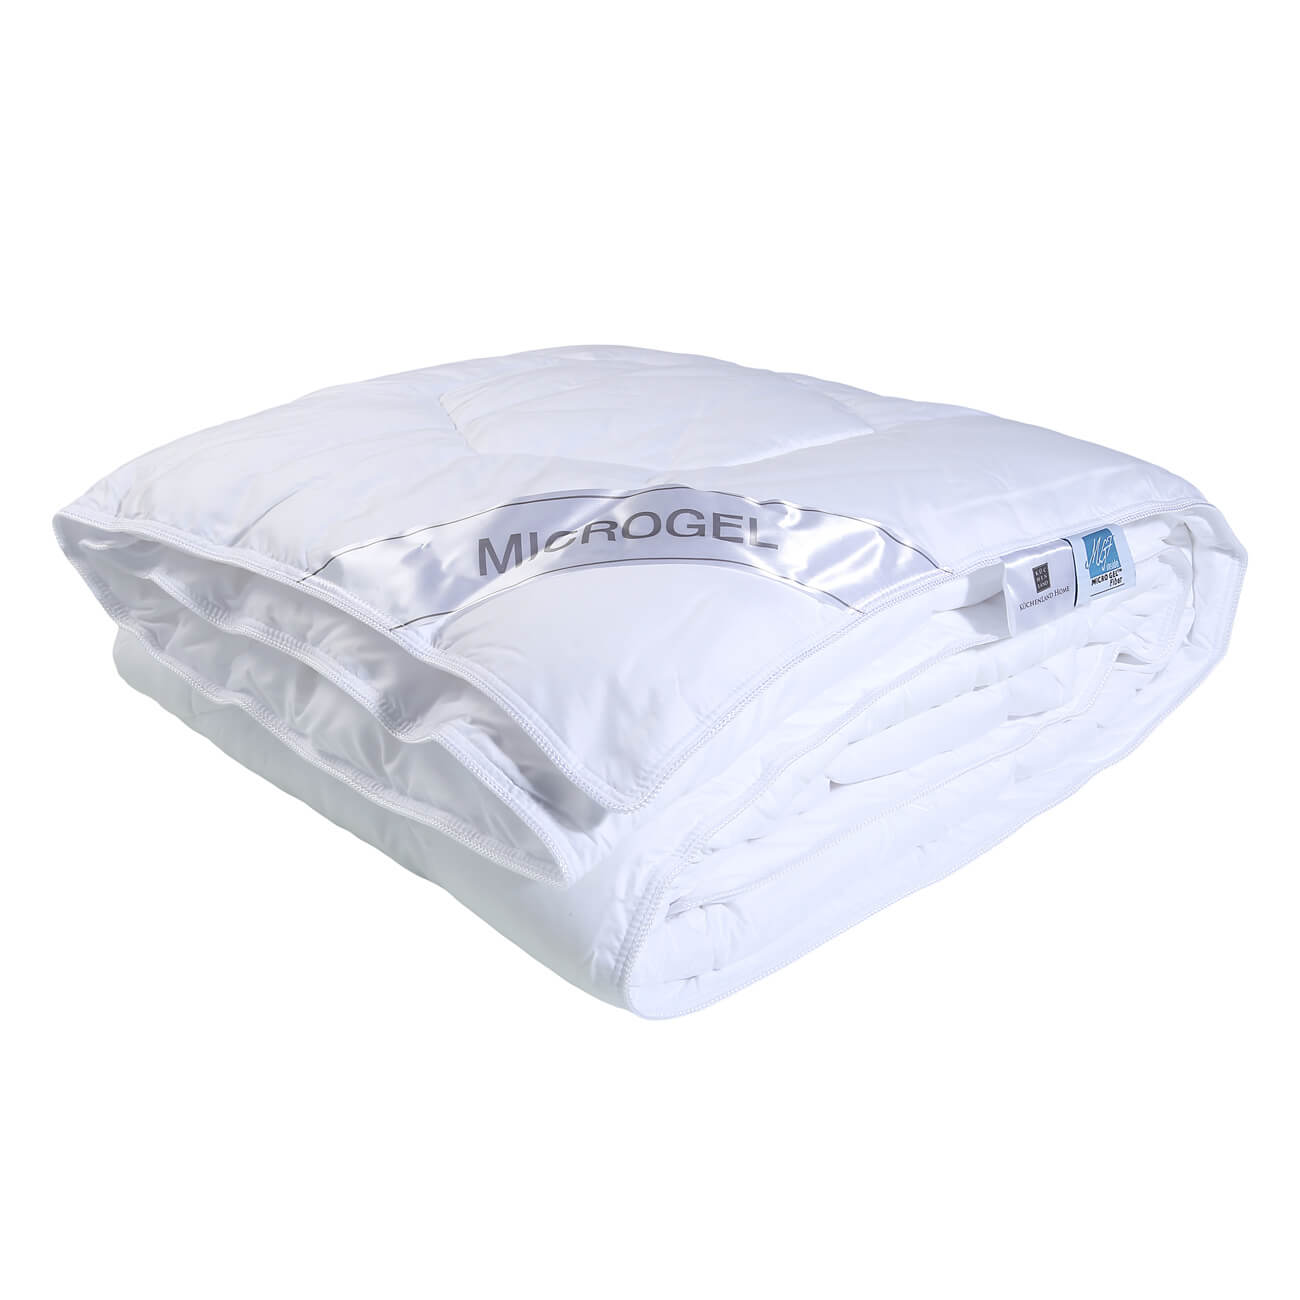 Одеяло, 140х200 см, микрофибра/микрогель, Microgel подушка 50х70 см микрофибра микрогель microgel